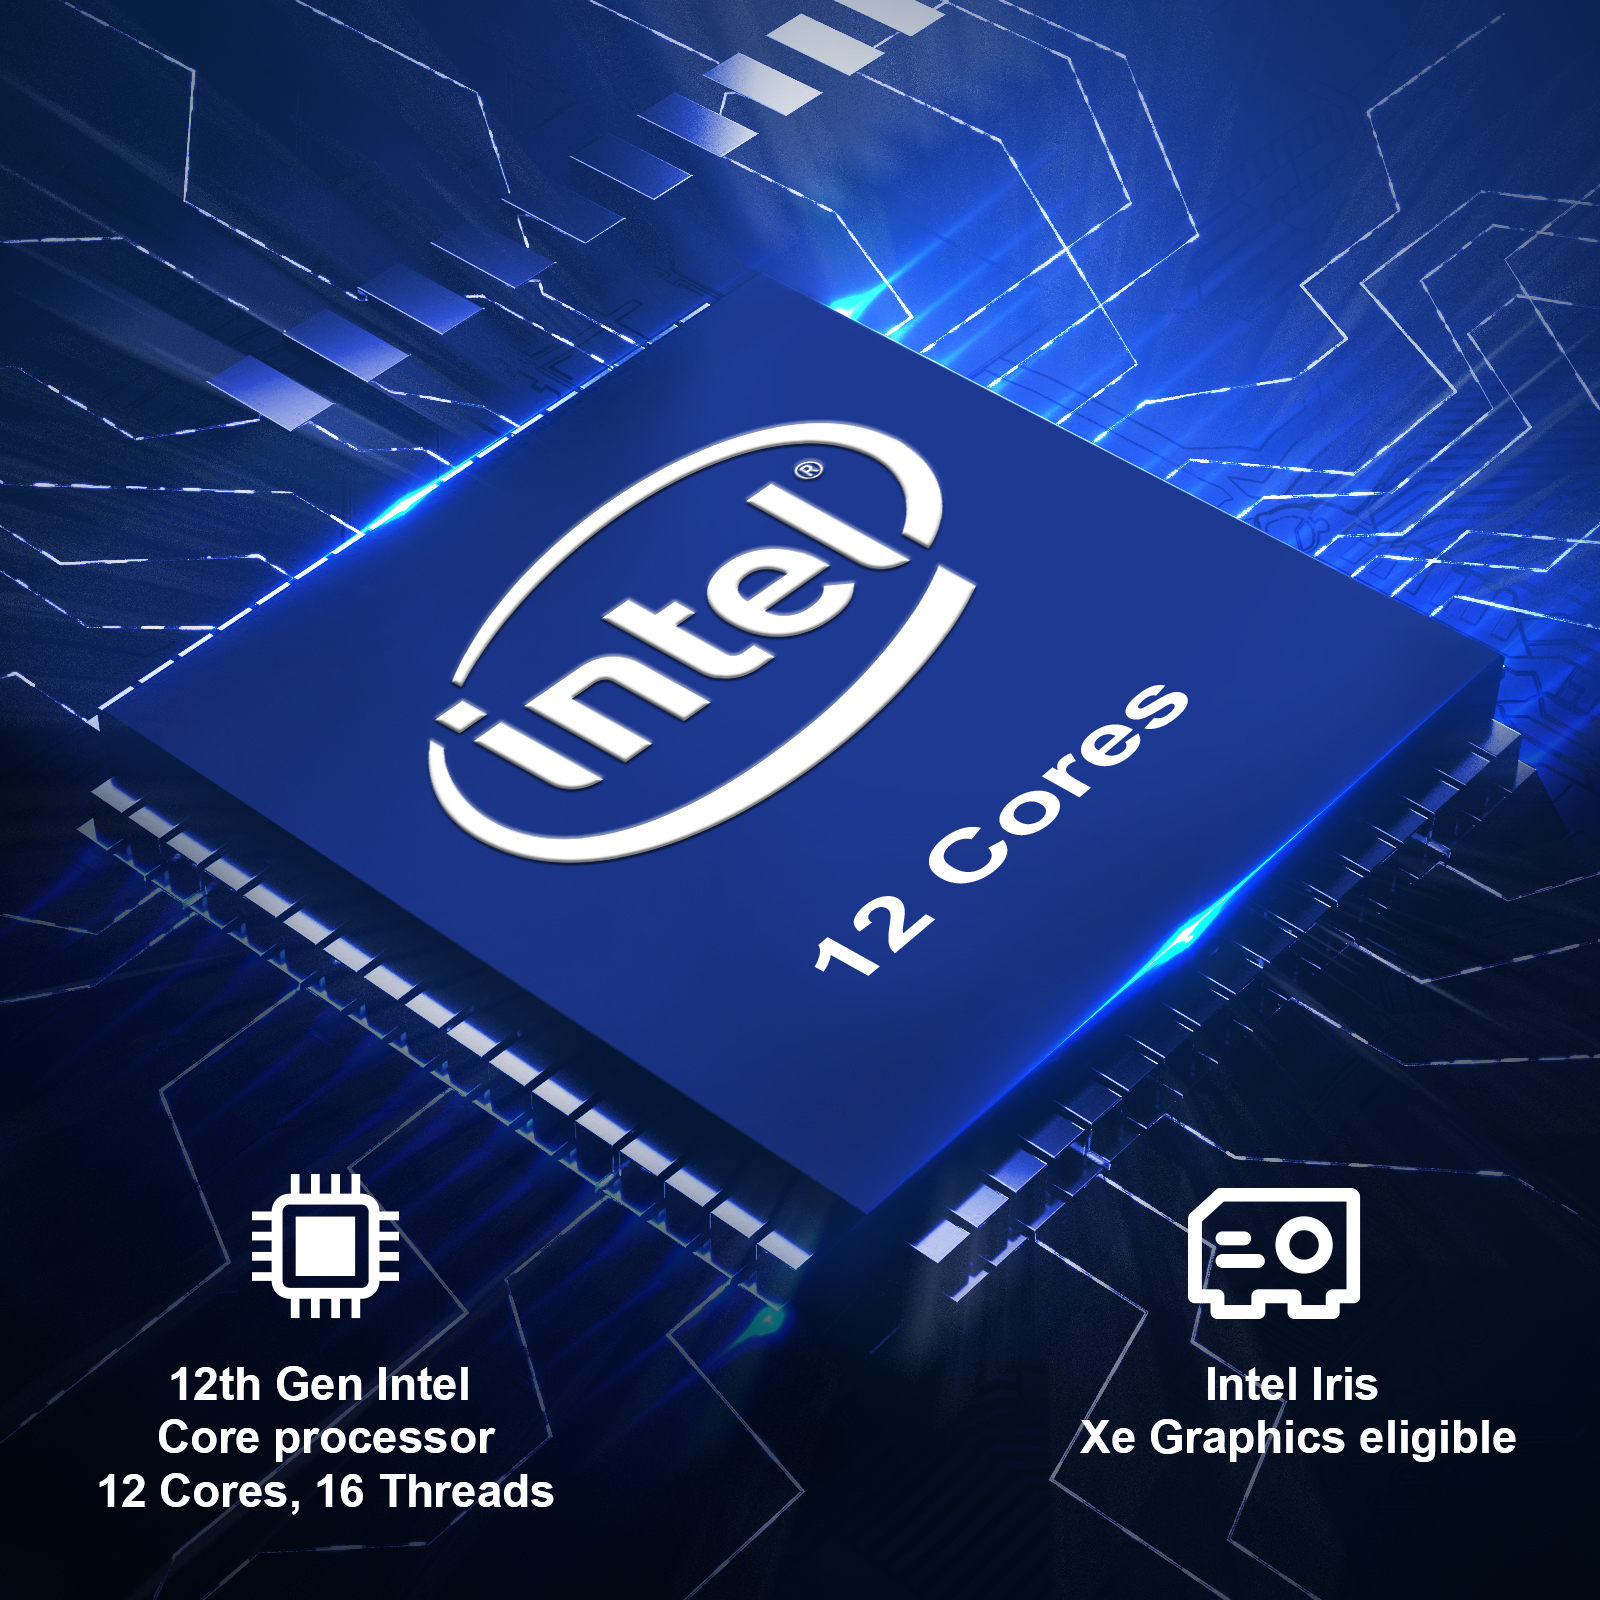 GEEKOM Mini PC Mini IT12, 12th Gen Intel i7-12650H NUC12 Mini